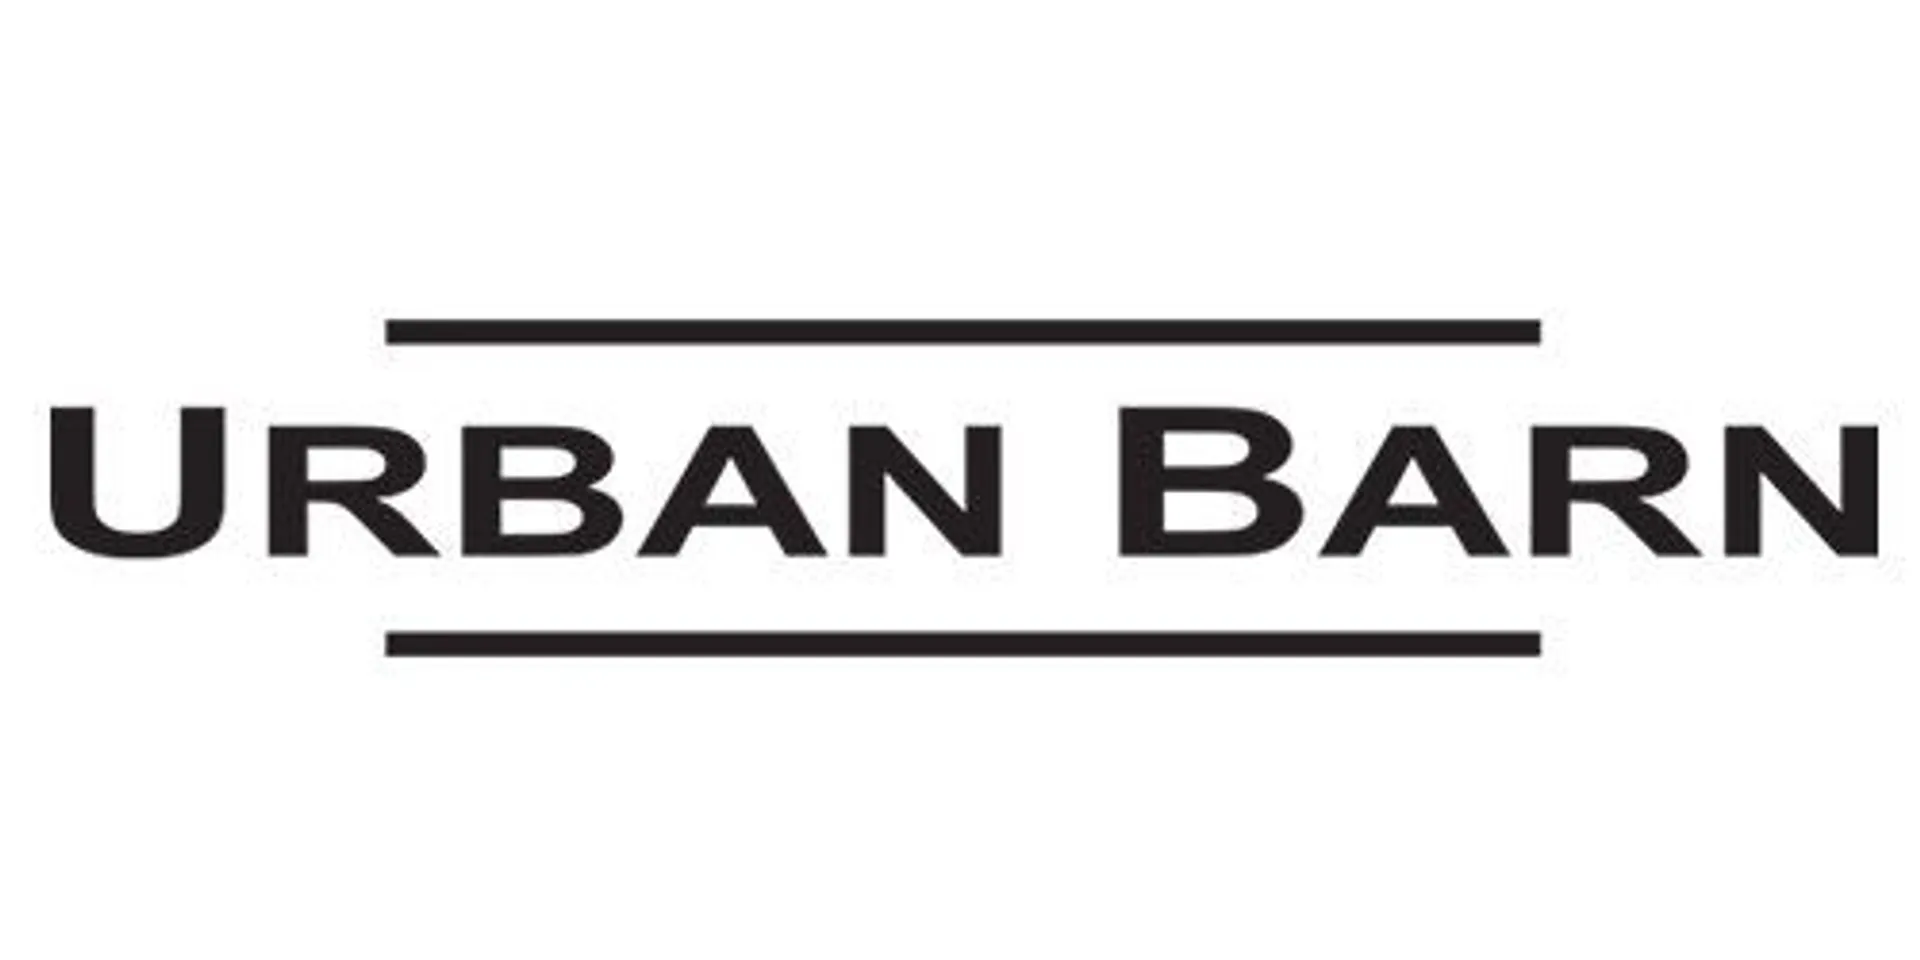 URBAN BARN logo de circulaires